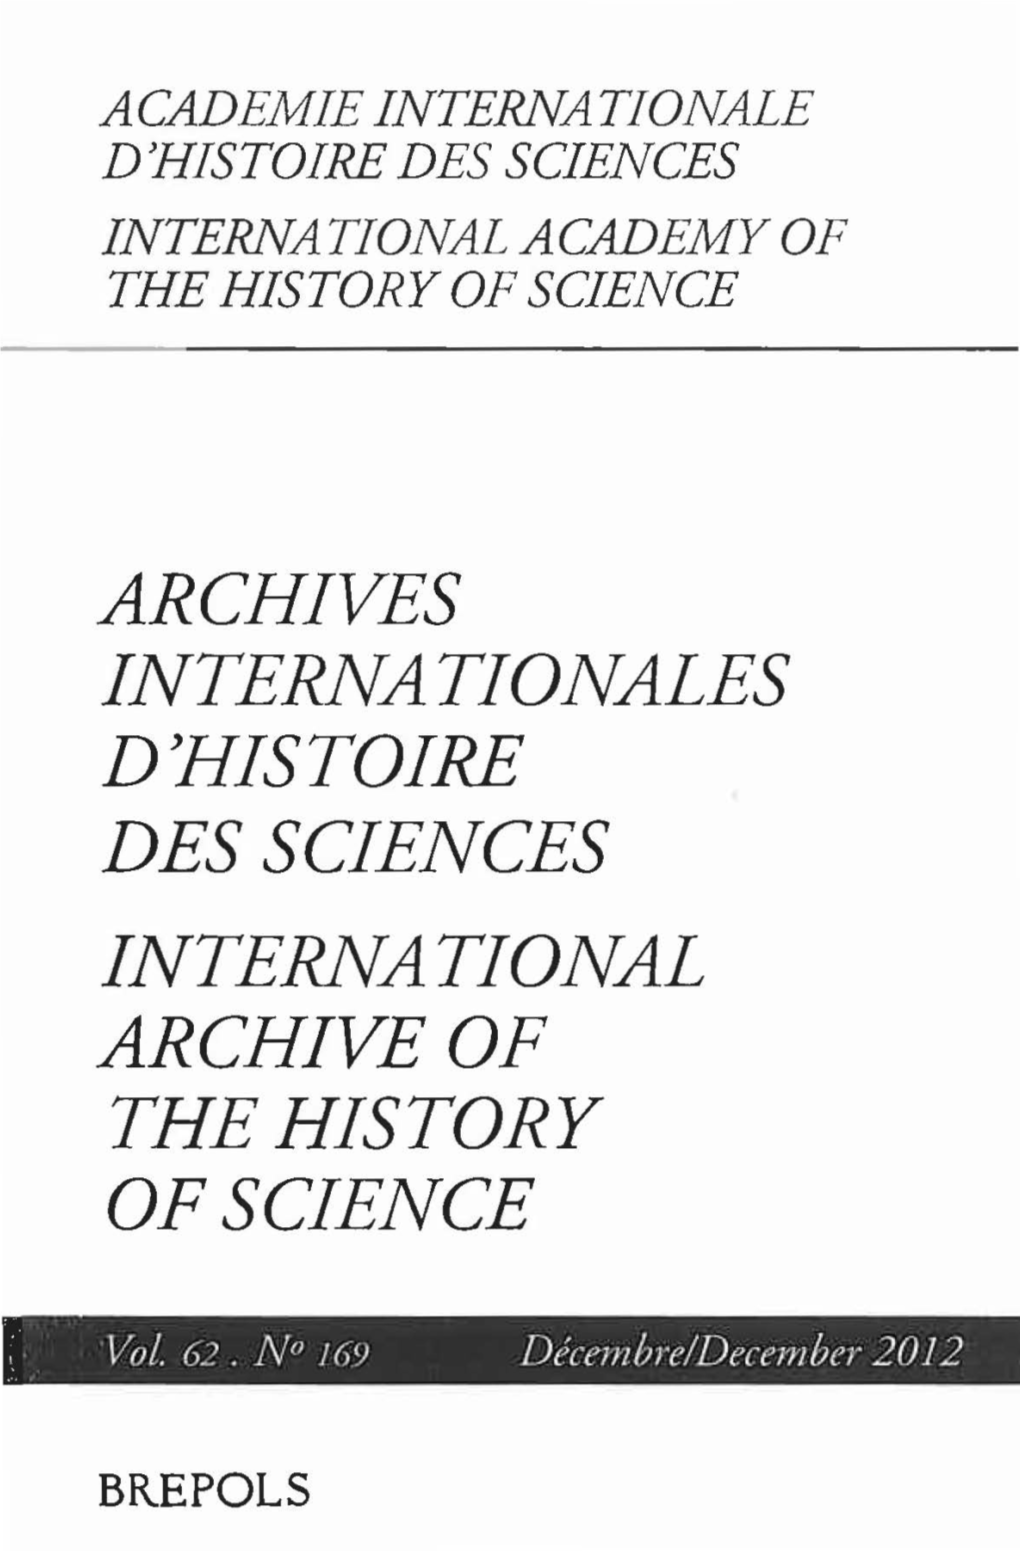 Archives Internationales D'histoire Des Sciences International Archive of the History of Science